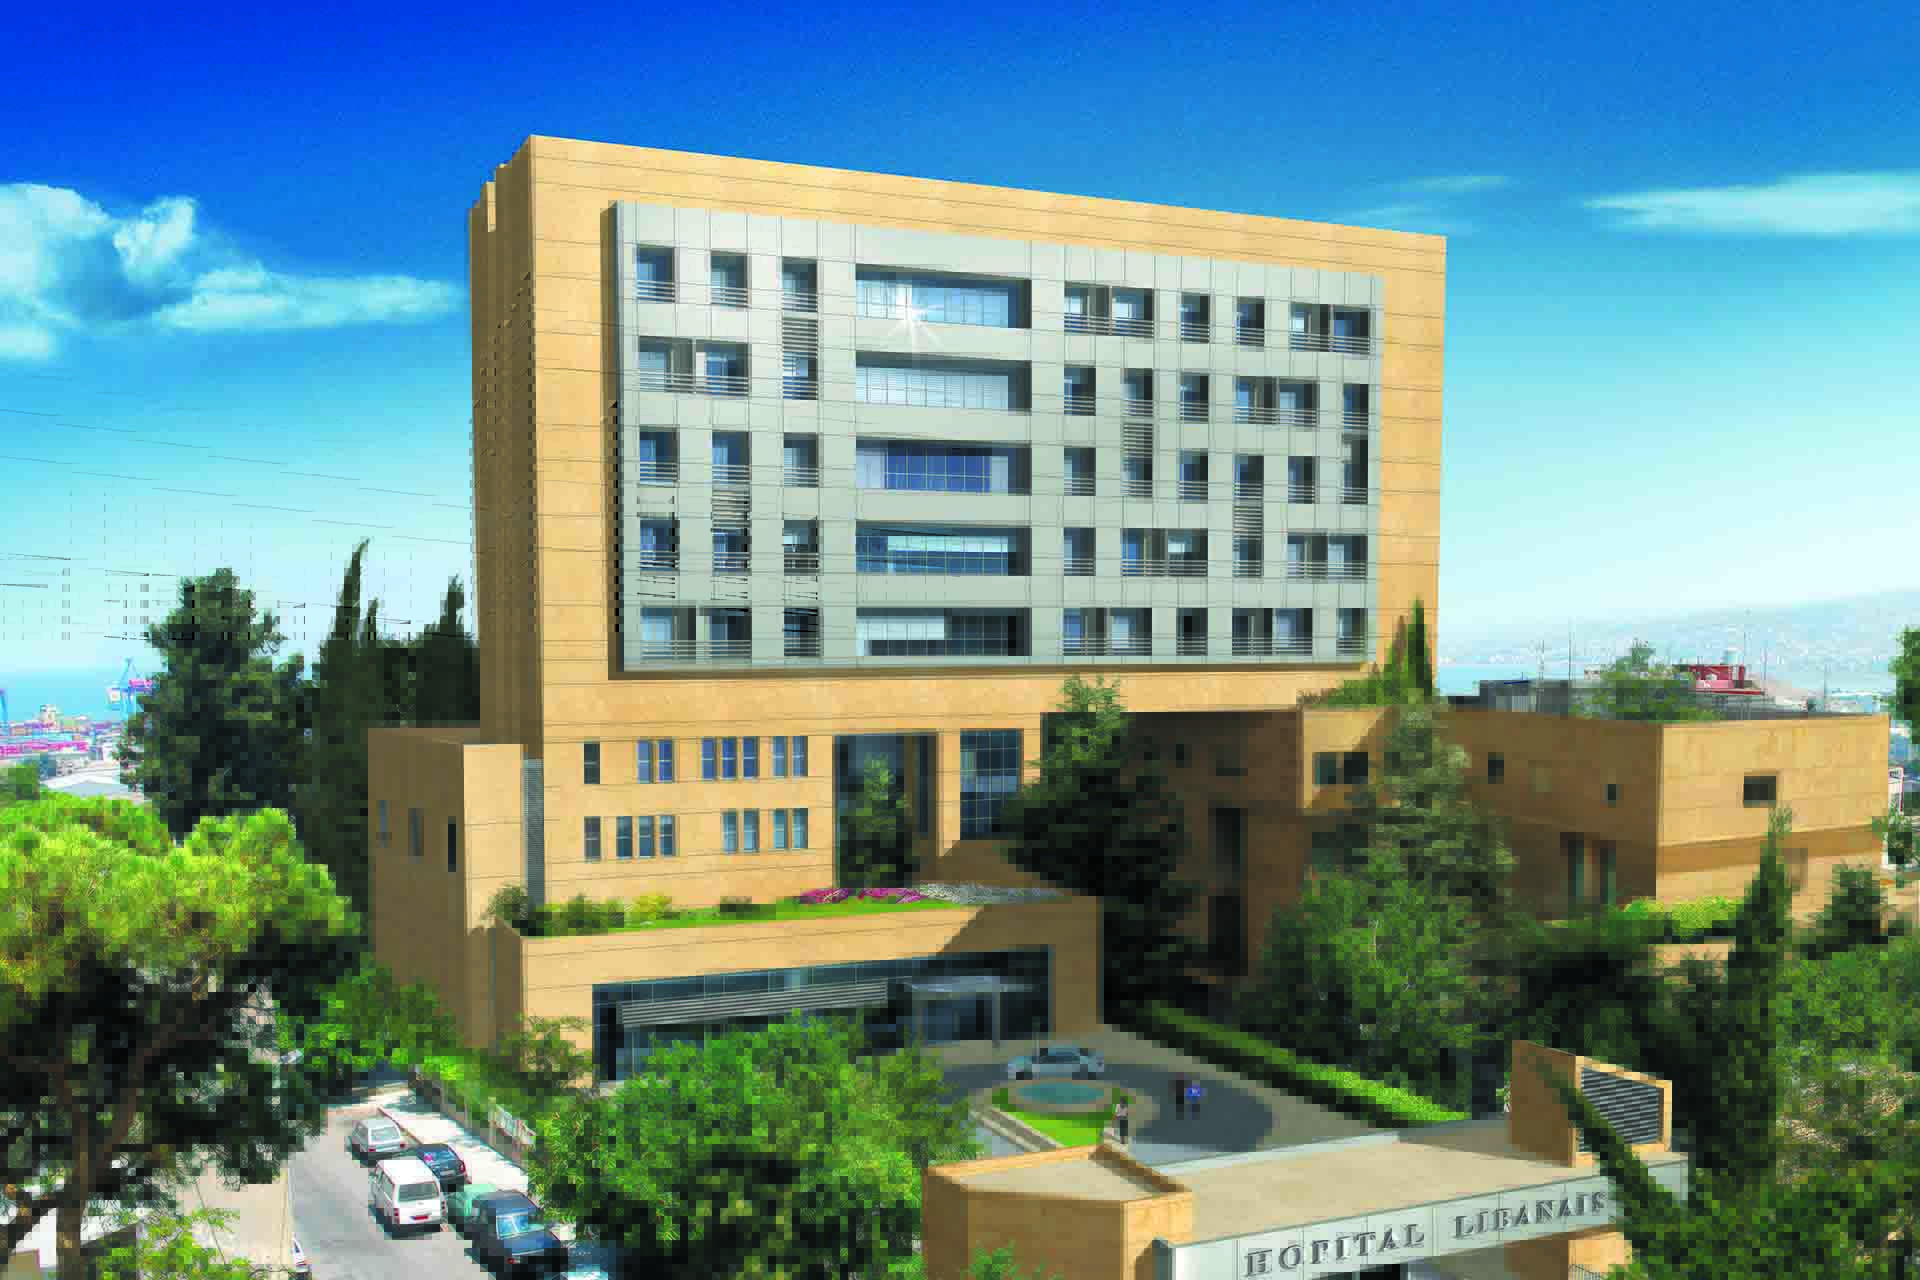 Lebanese Hospital - Geitaoui